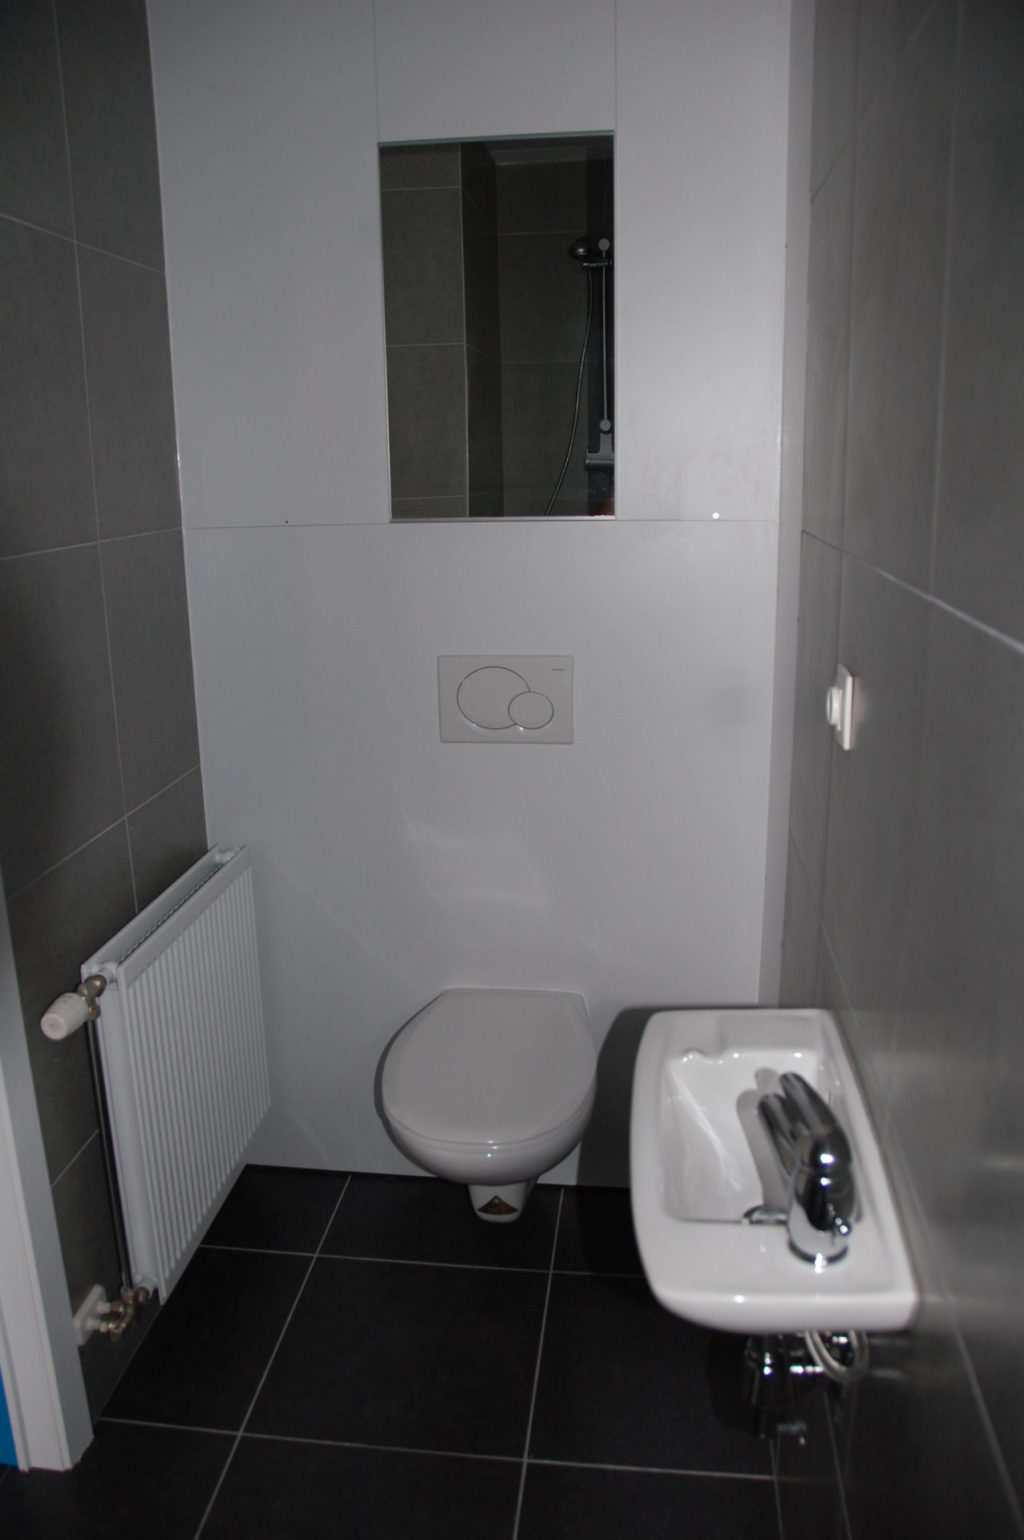 Sint-Jozefsstraat 30 - Kamer 16 - Toilet en lavabo